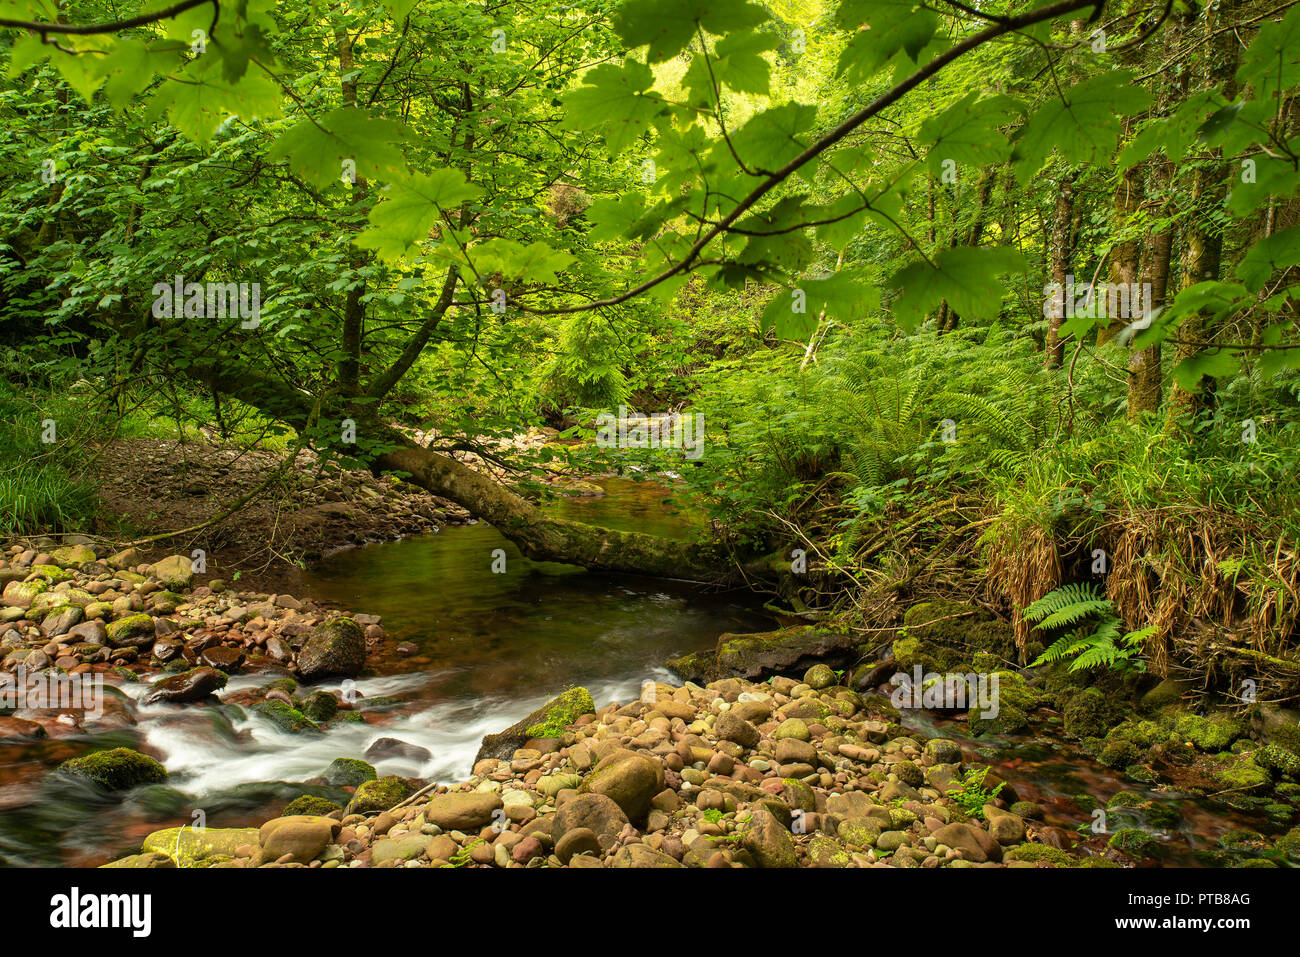 Estate scena di bosco, fogliame verde albero pendente, crescendo sul fiume, pietra marrone riverbed esposto, con il verde del sottobosco. Foto Stock